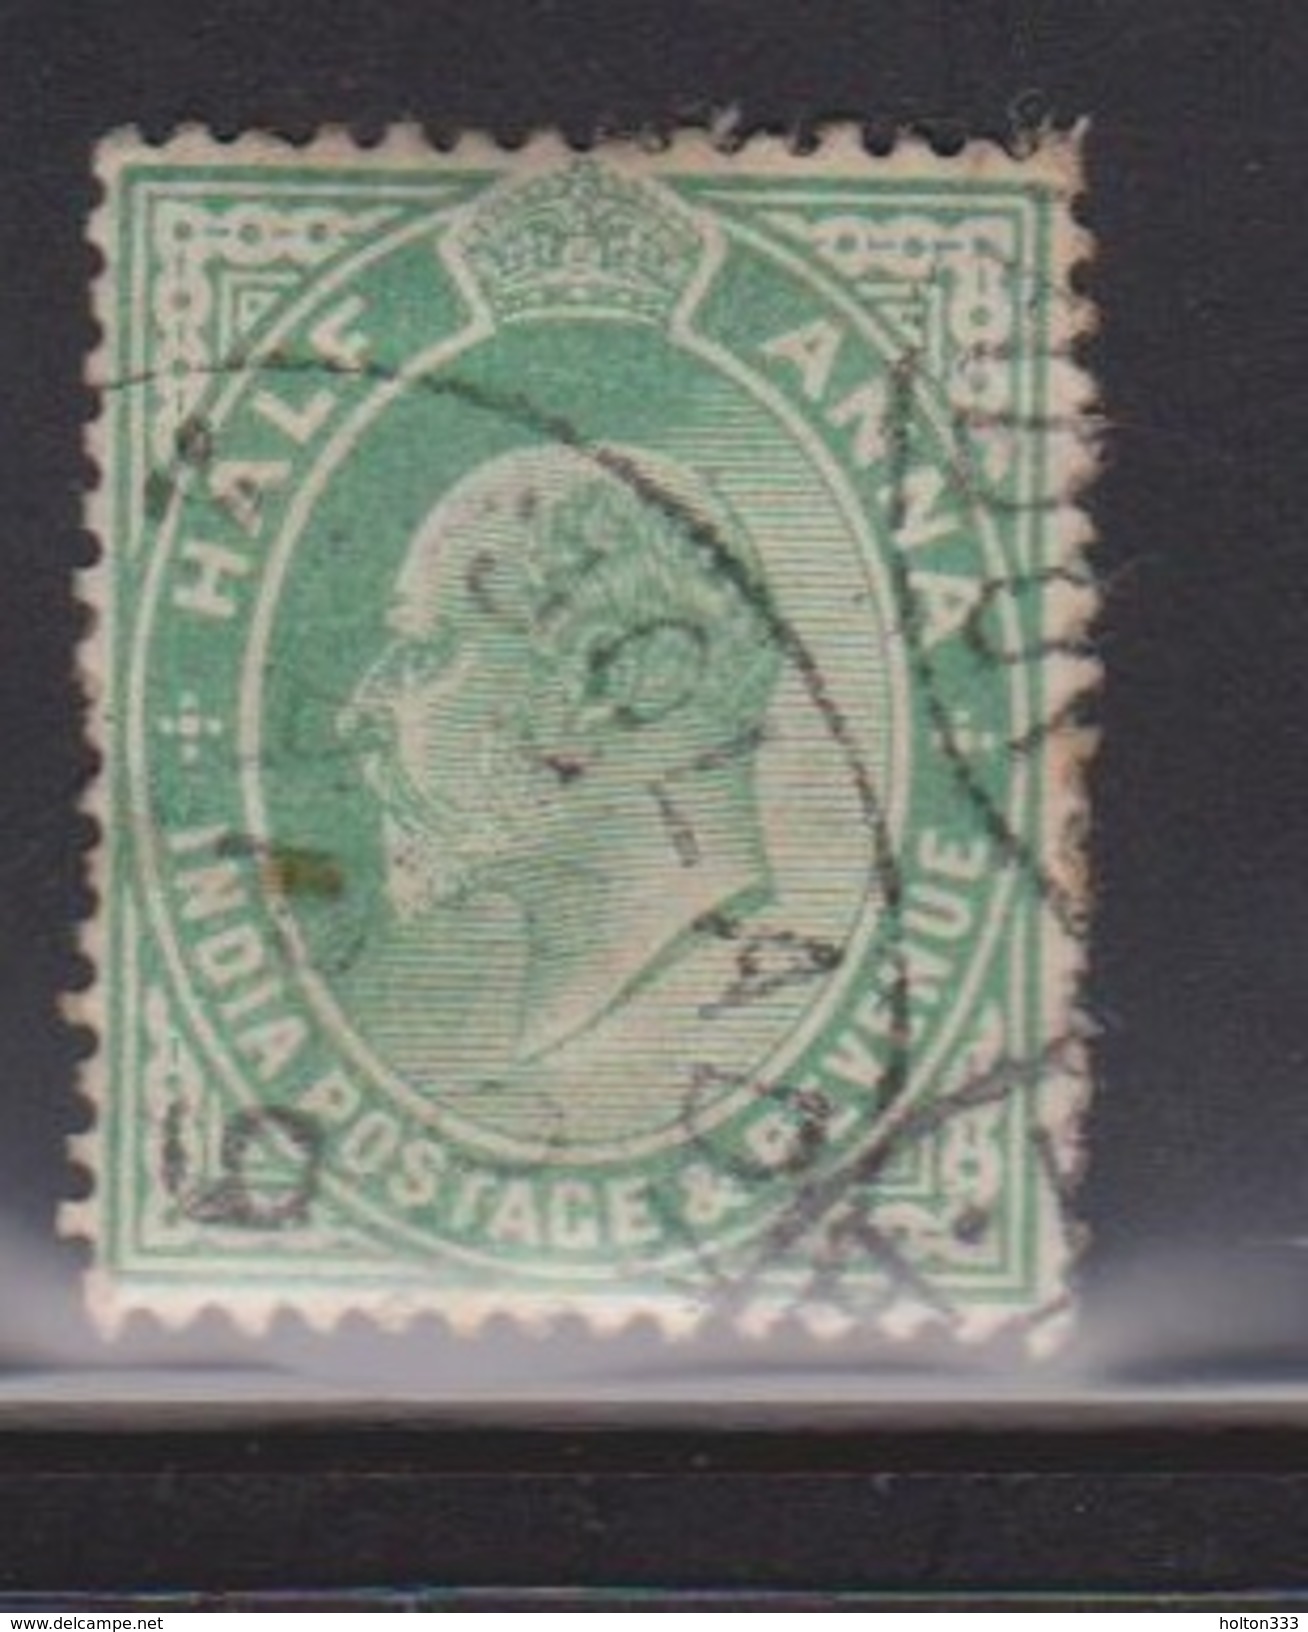 INDIA Scott # 78 Used - King Edward VII - 1902-11 King Edward VII